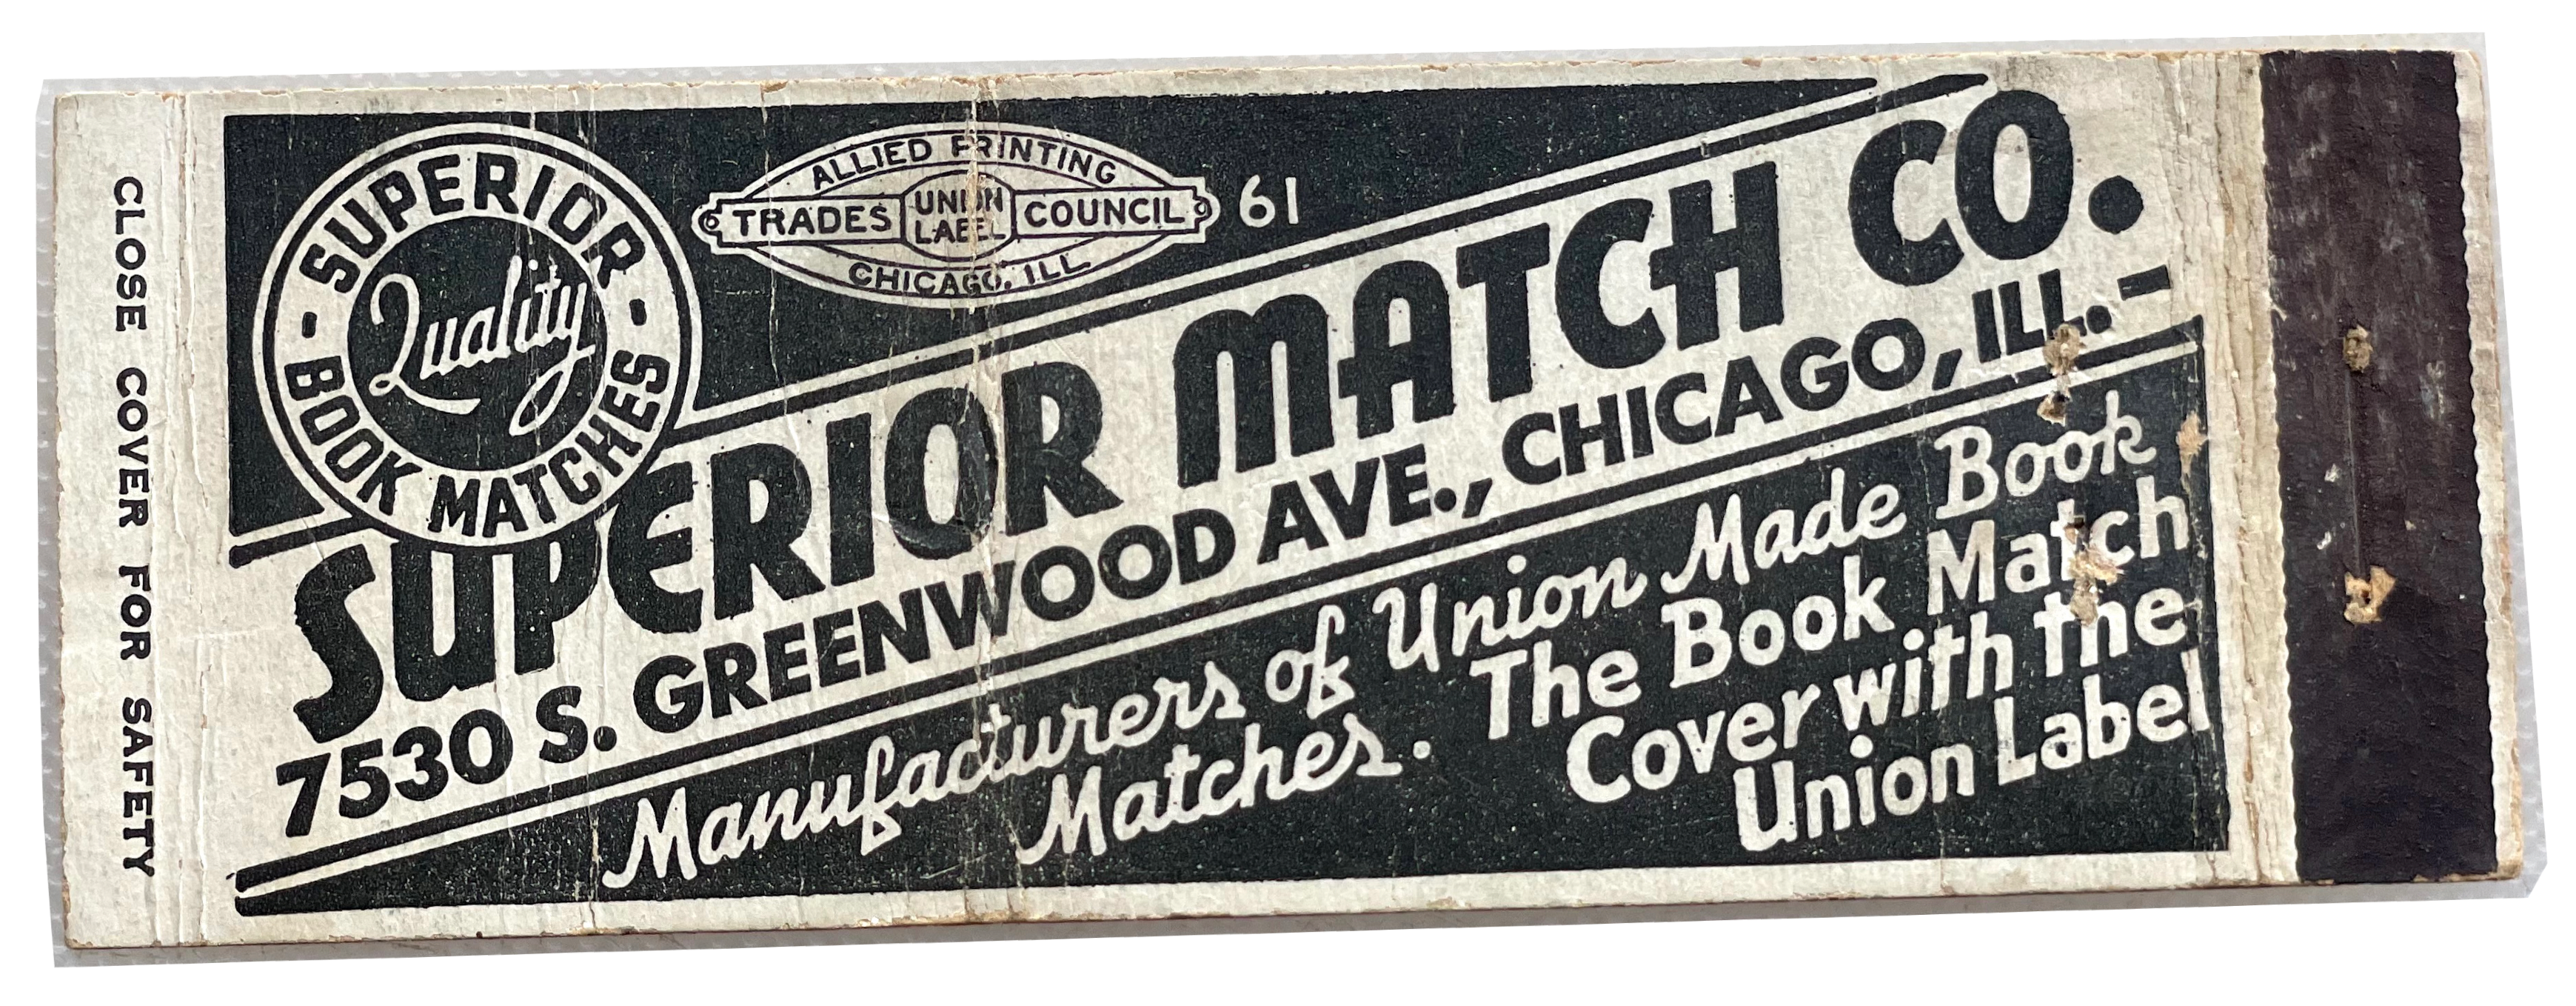 Superior Match Co., est. 1937